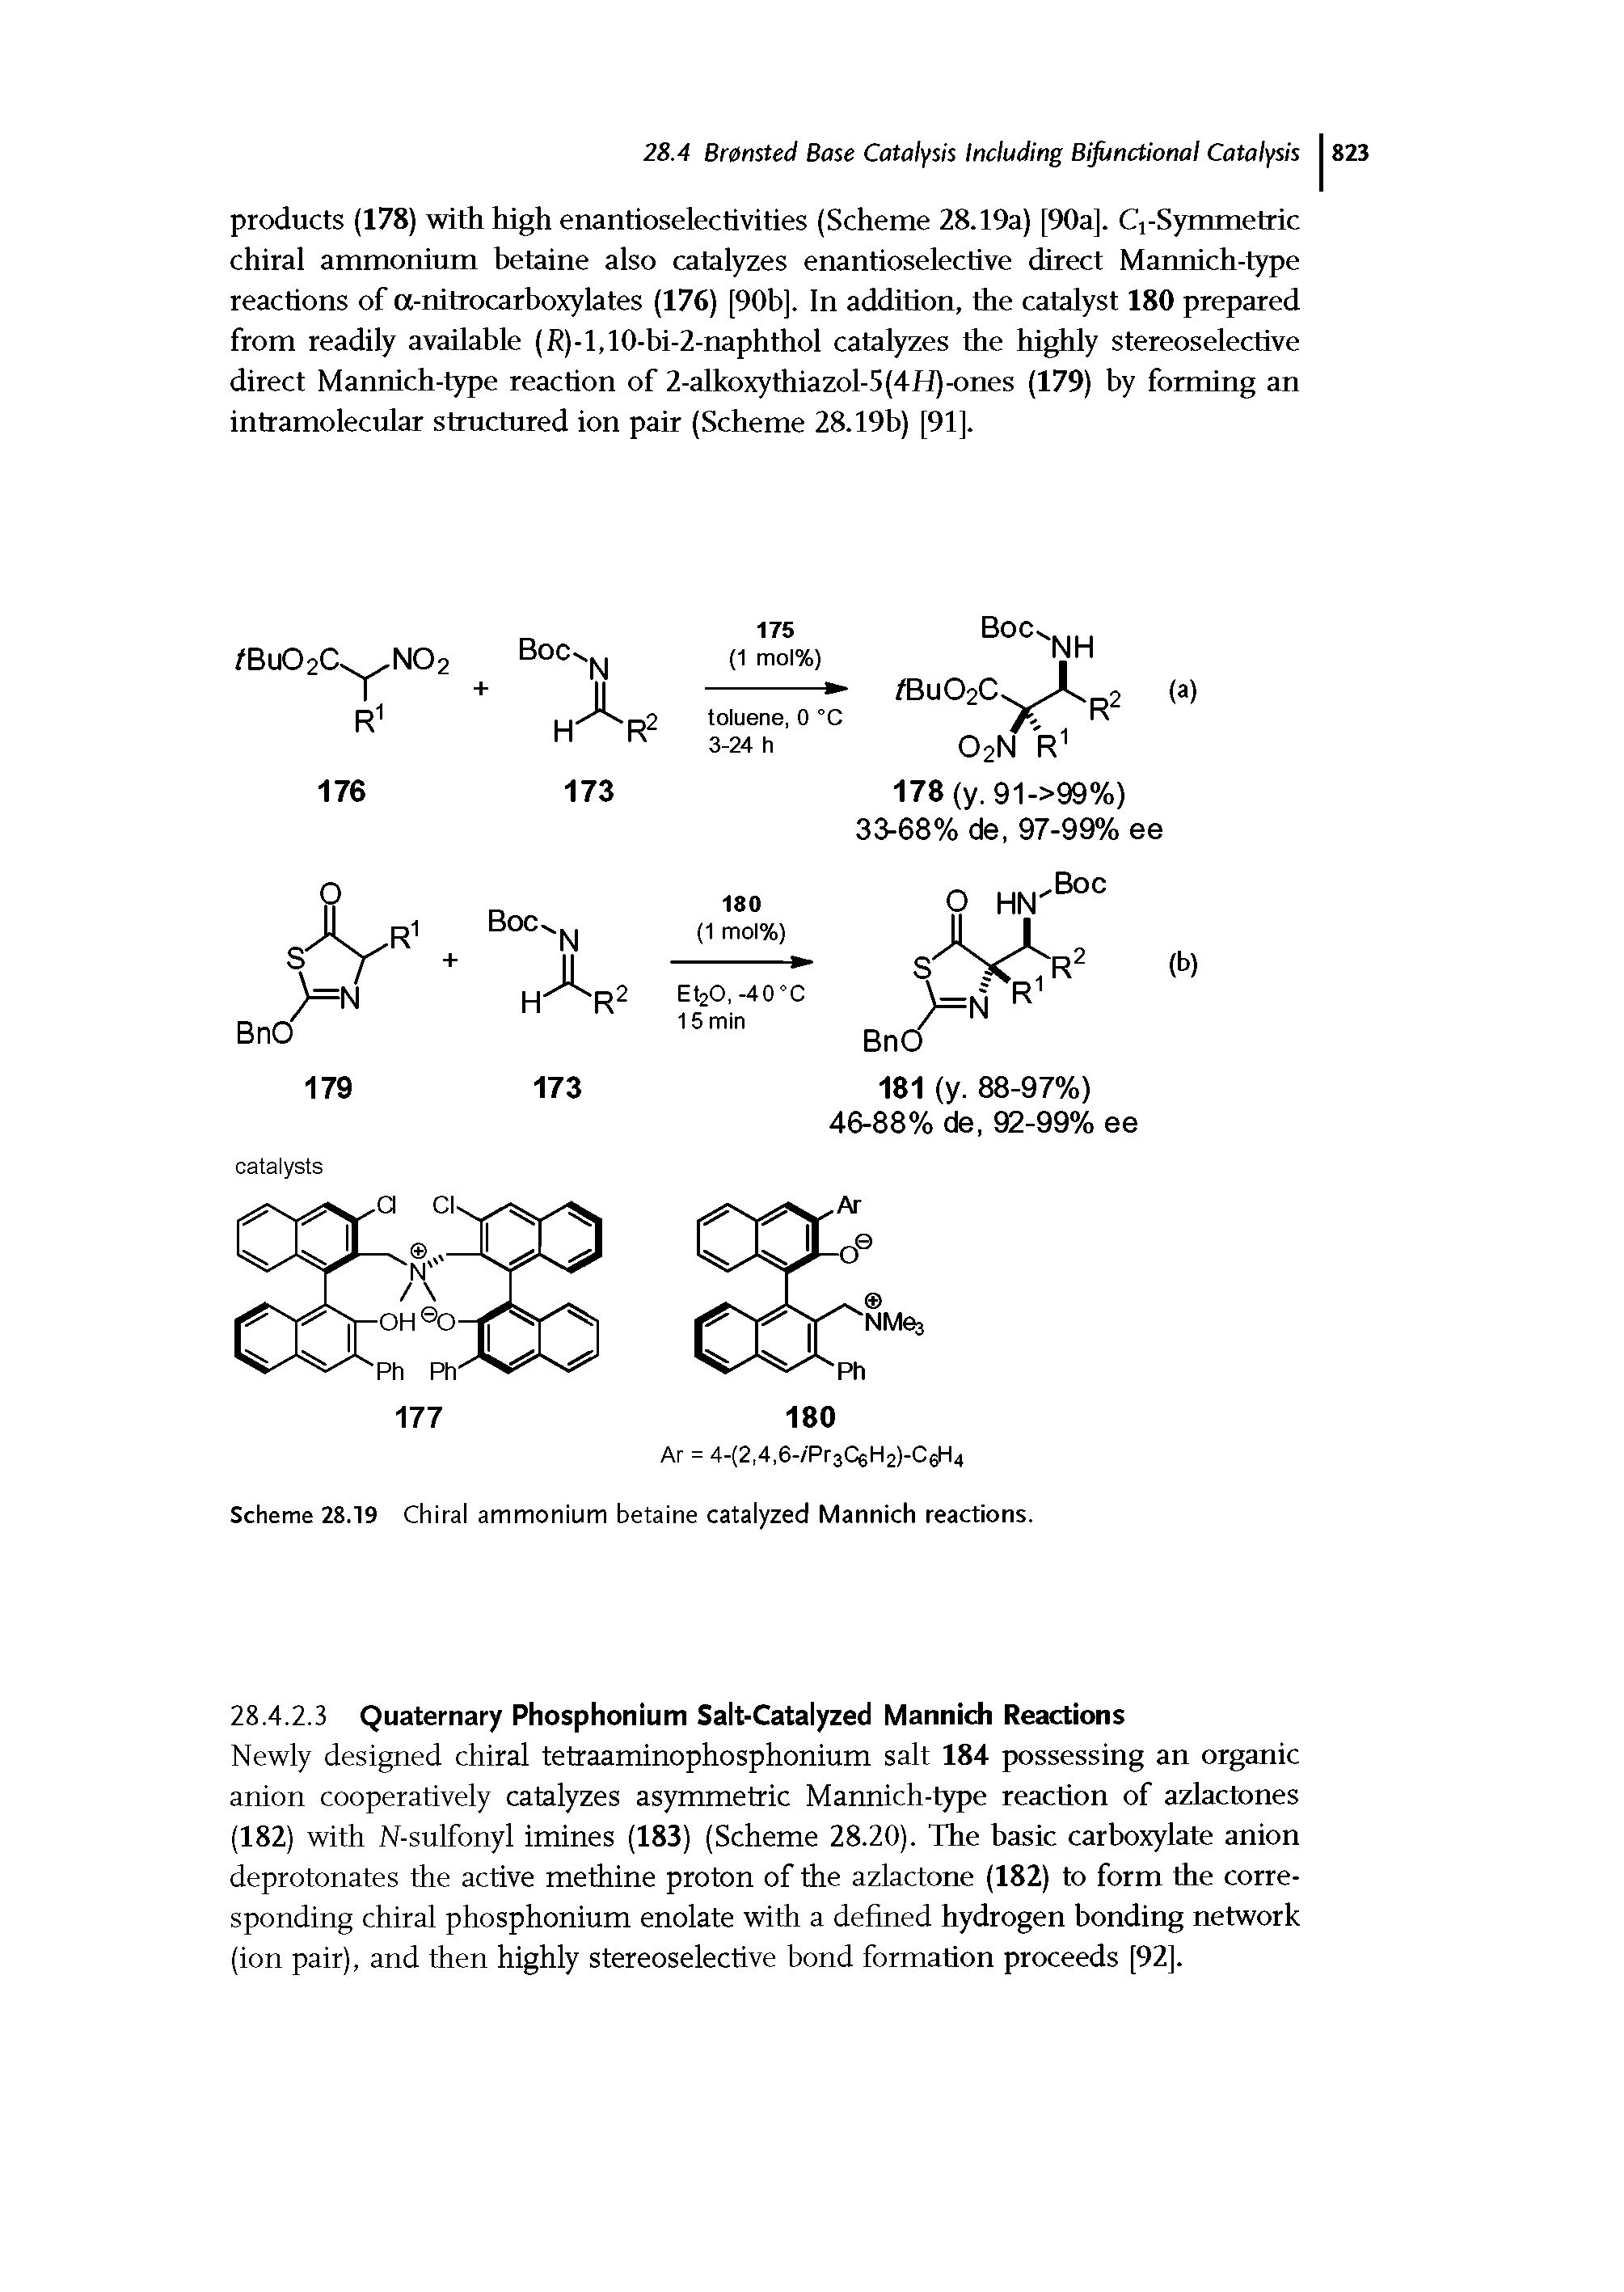 Scheme 28.19 Chiral ammonium betaine catalyzed Mannich reactions.